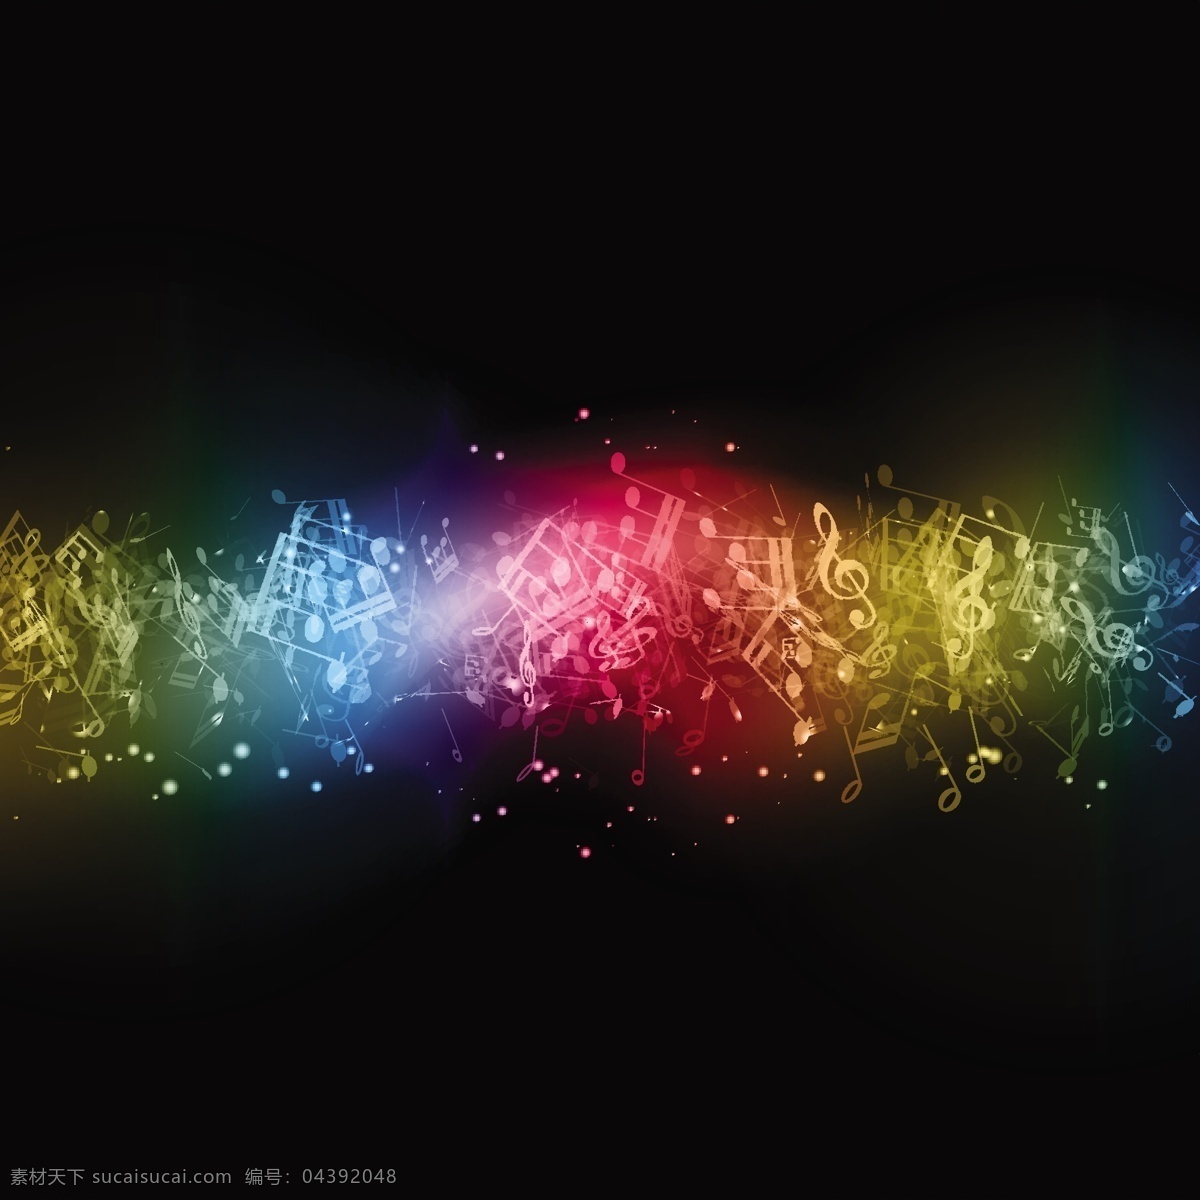 现代音符背景 背景 音乐 抽象 灯光 波浪 颜色 形状 图形 能量 平面设计 元素 现代 音符 曲线 设计元素 黑色